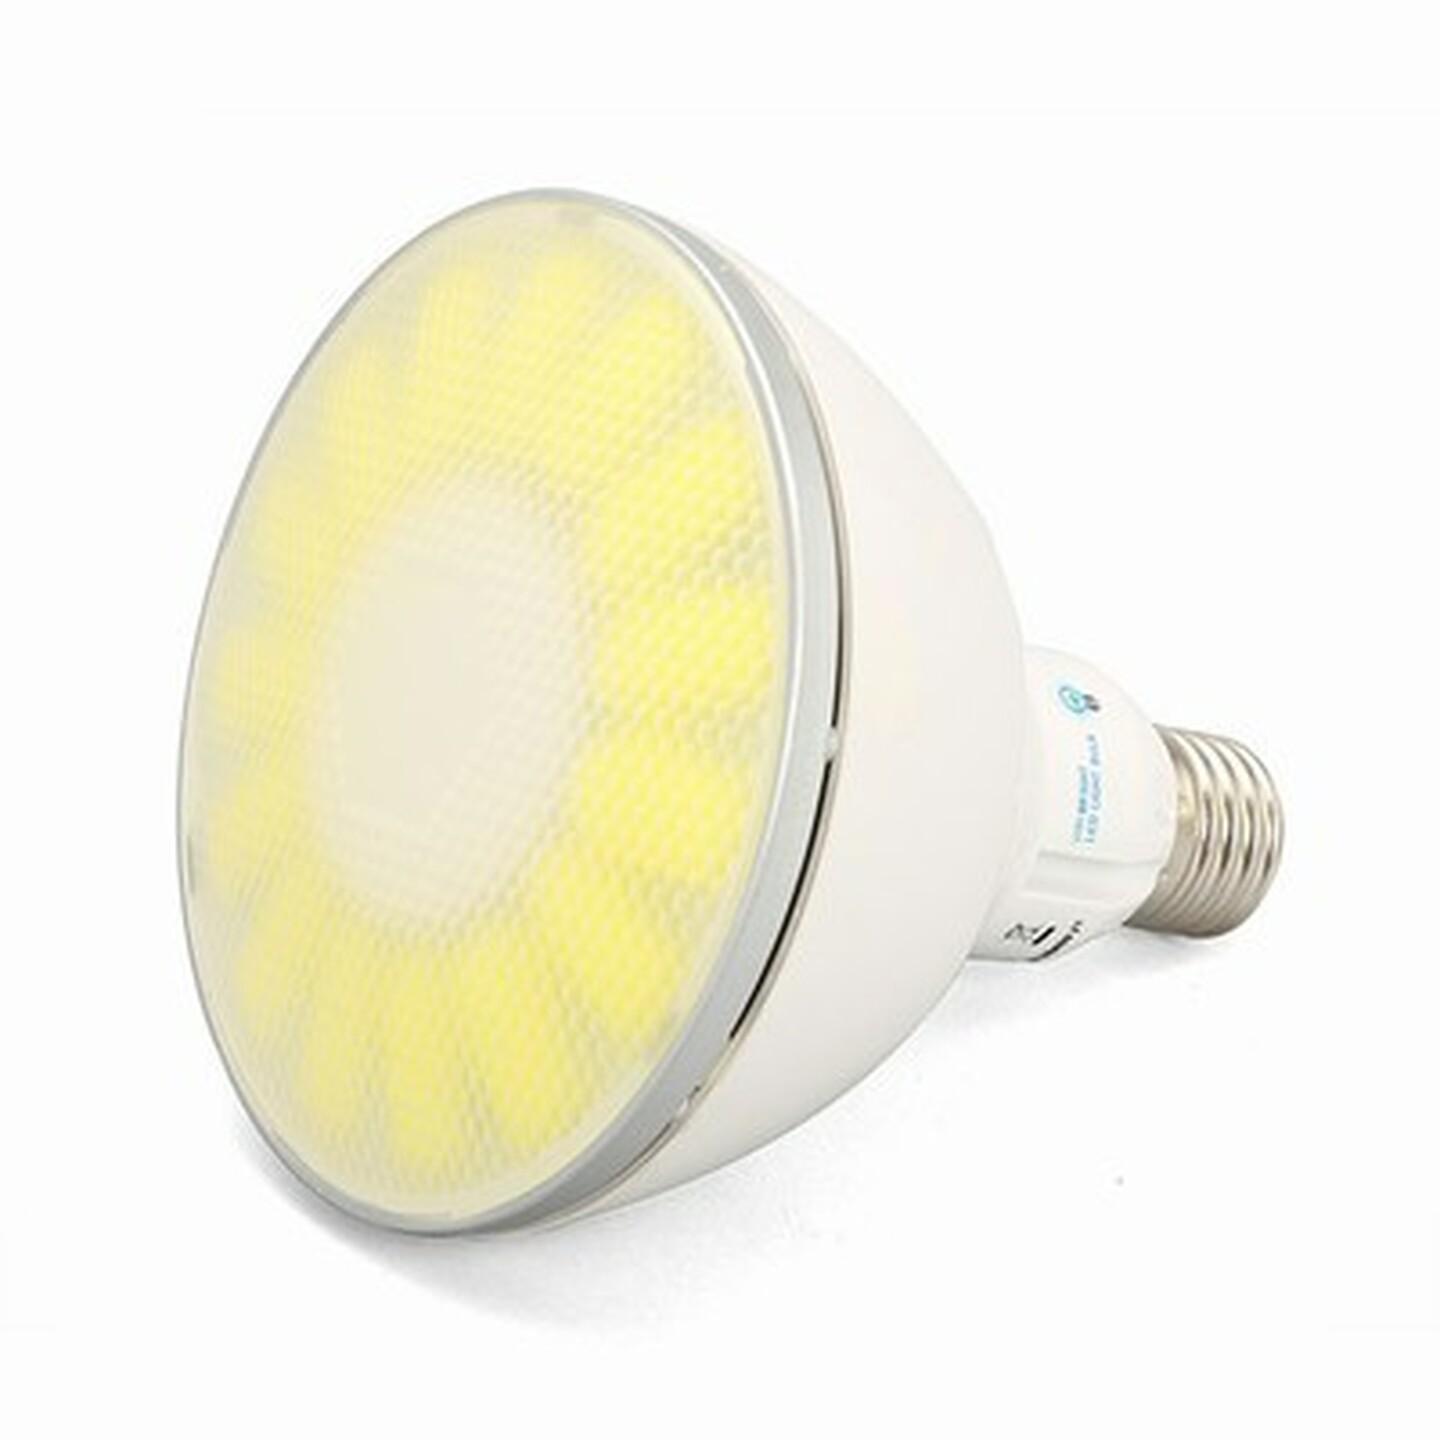 Viribright 18W PAR38 LED Spotlight - Natural White